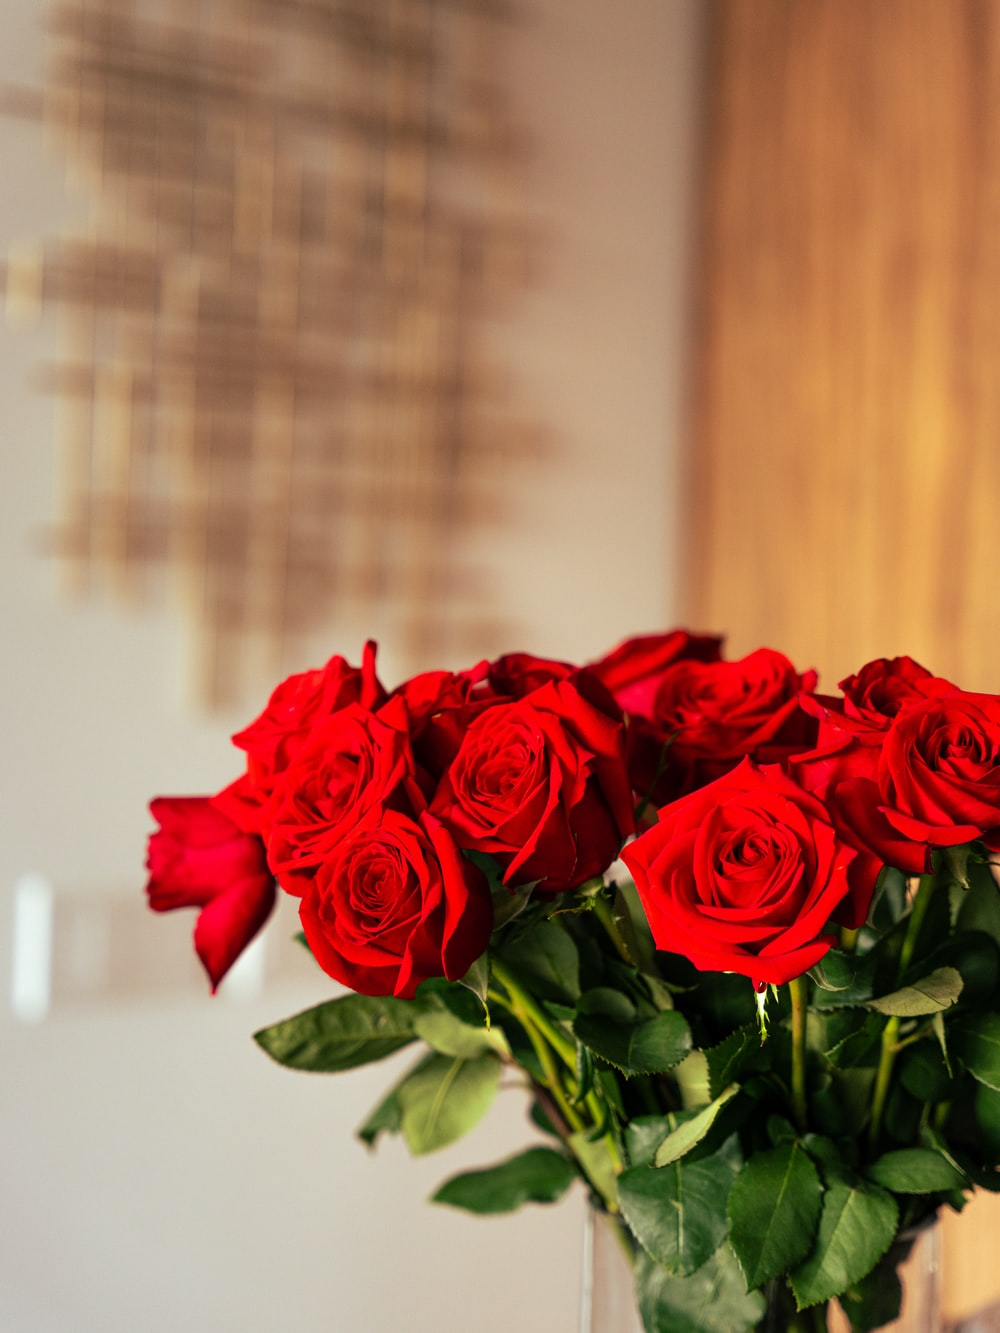 عکس هنری جالب توجه از دسته گل رز قرمز ناز در گلدان 